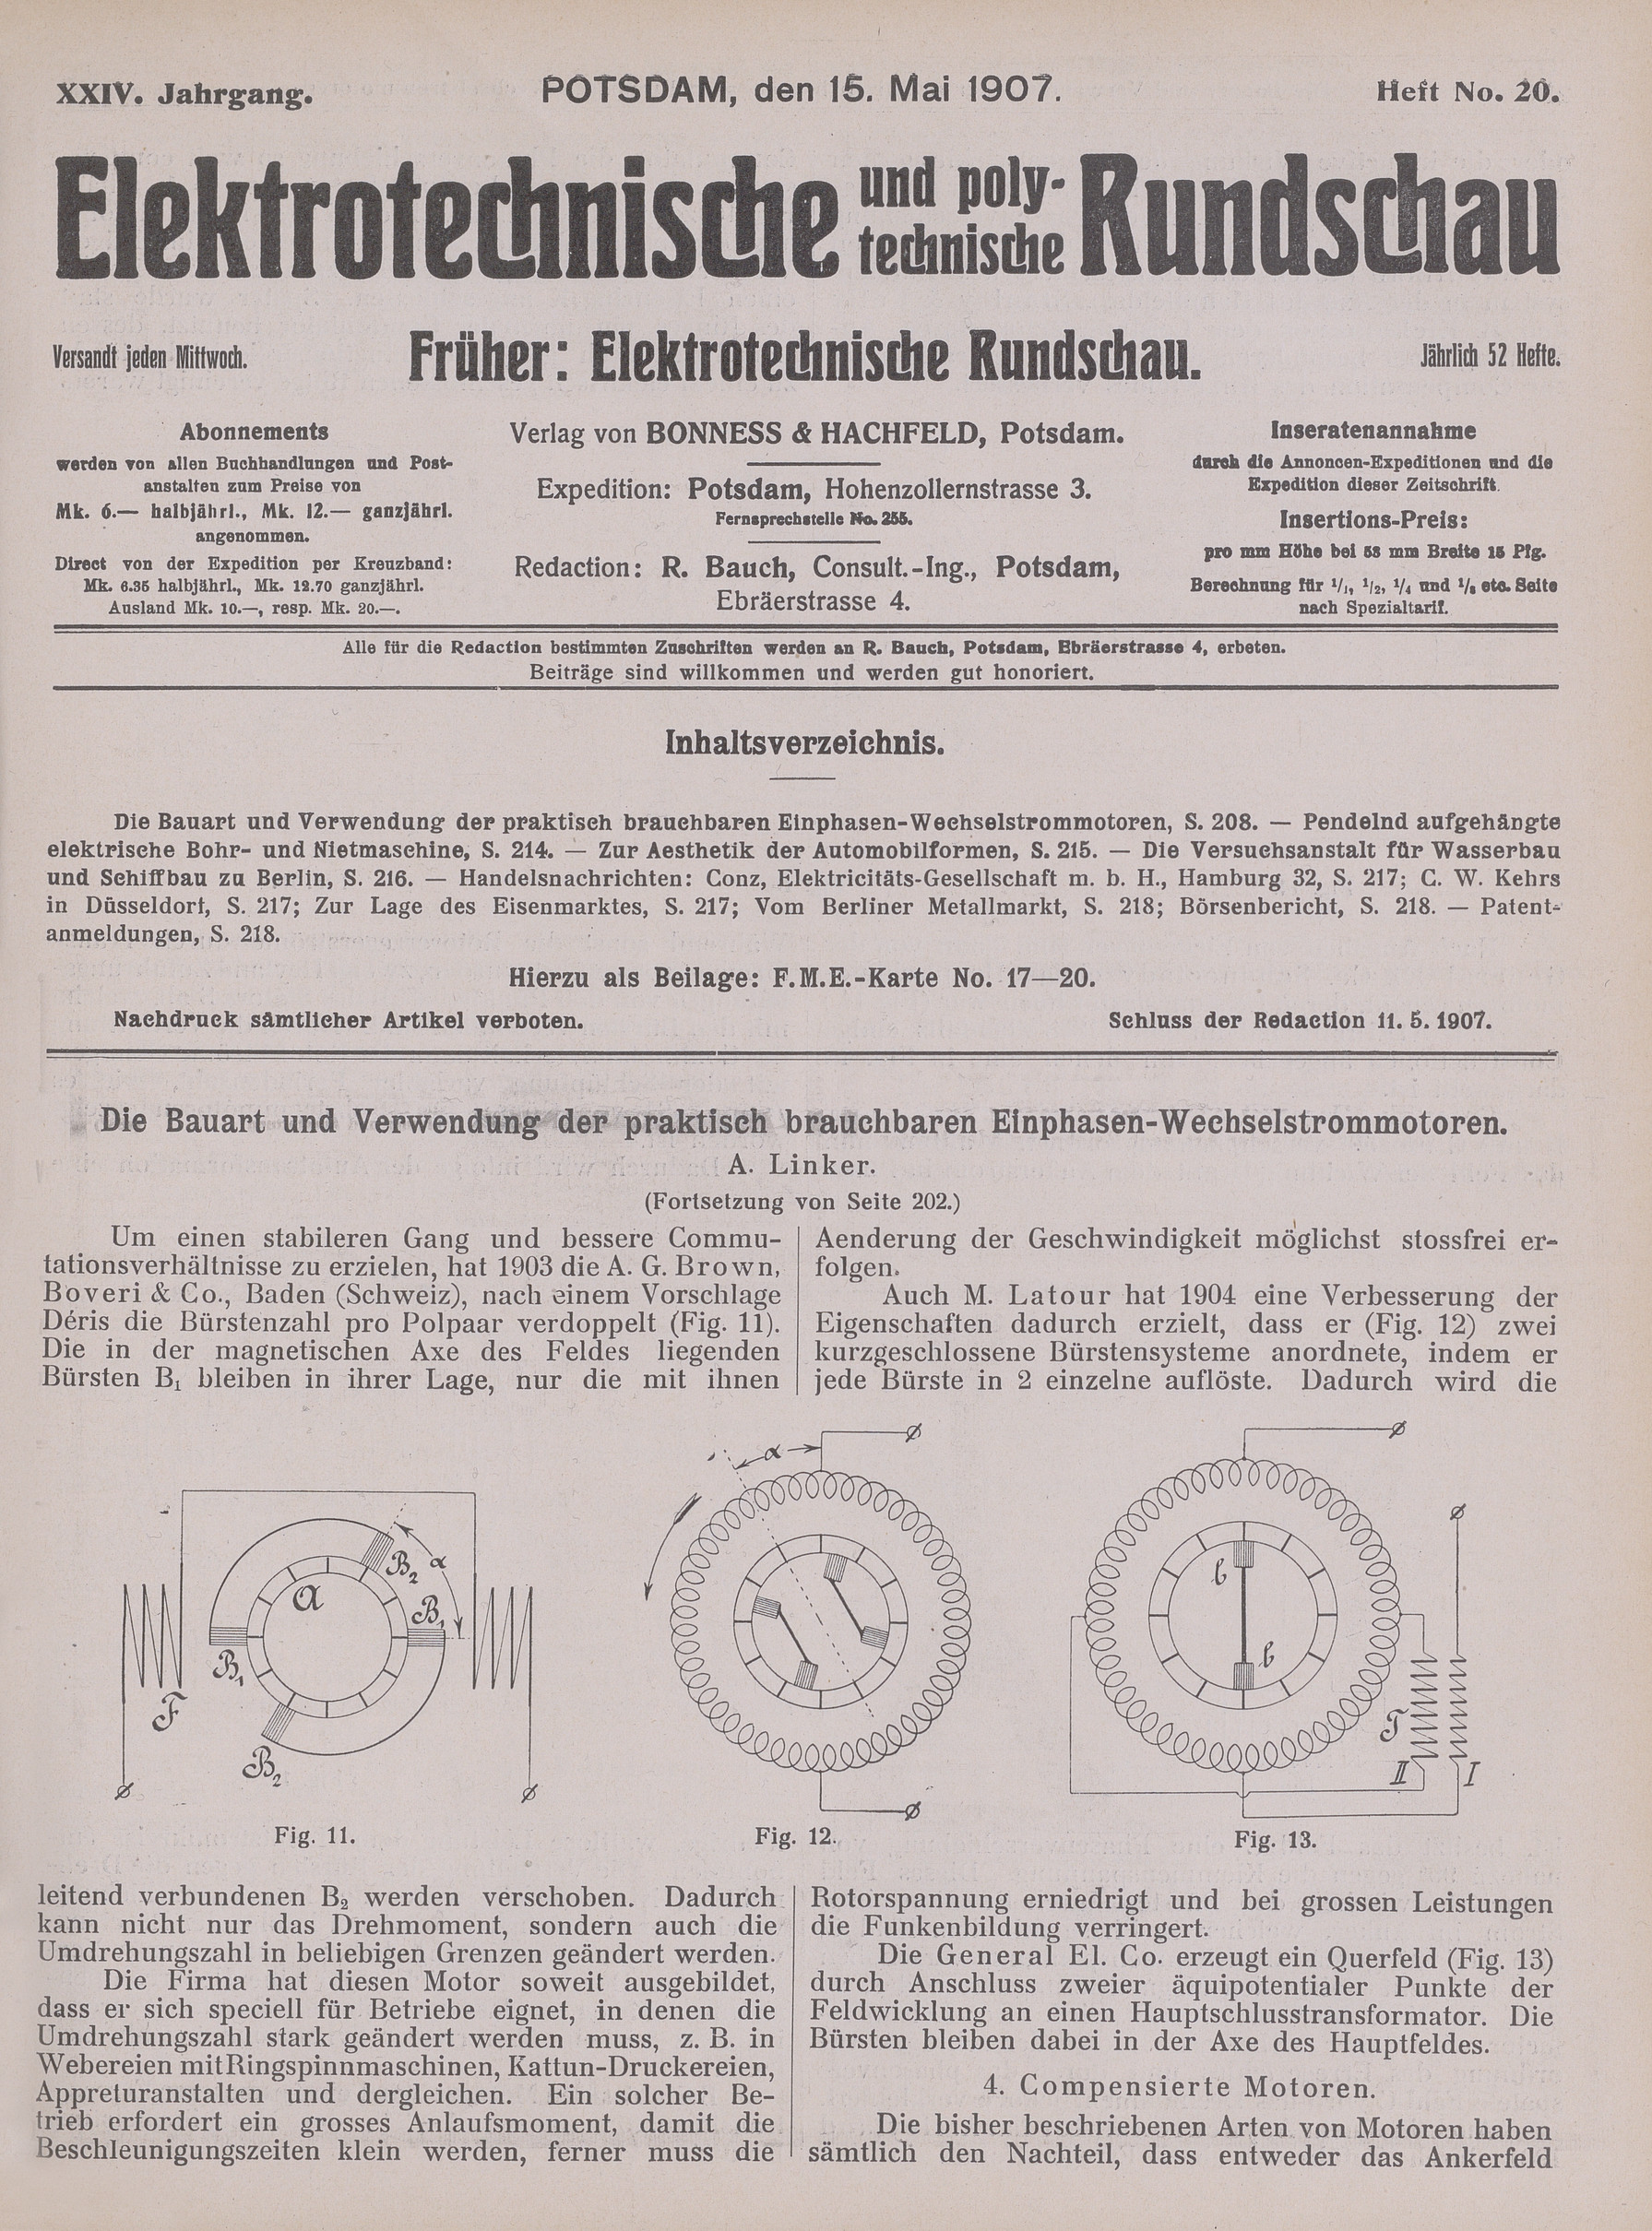 Elektrotechnische und polytechnische Rundschau, XXIV. Jahrgang, Heft No. 20